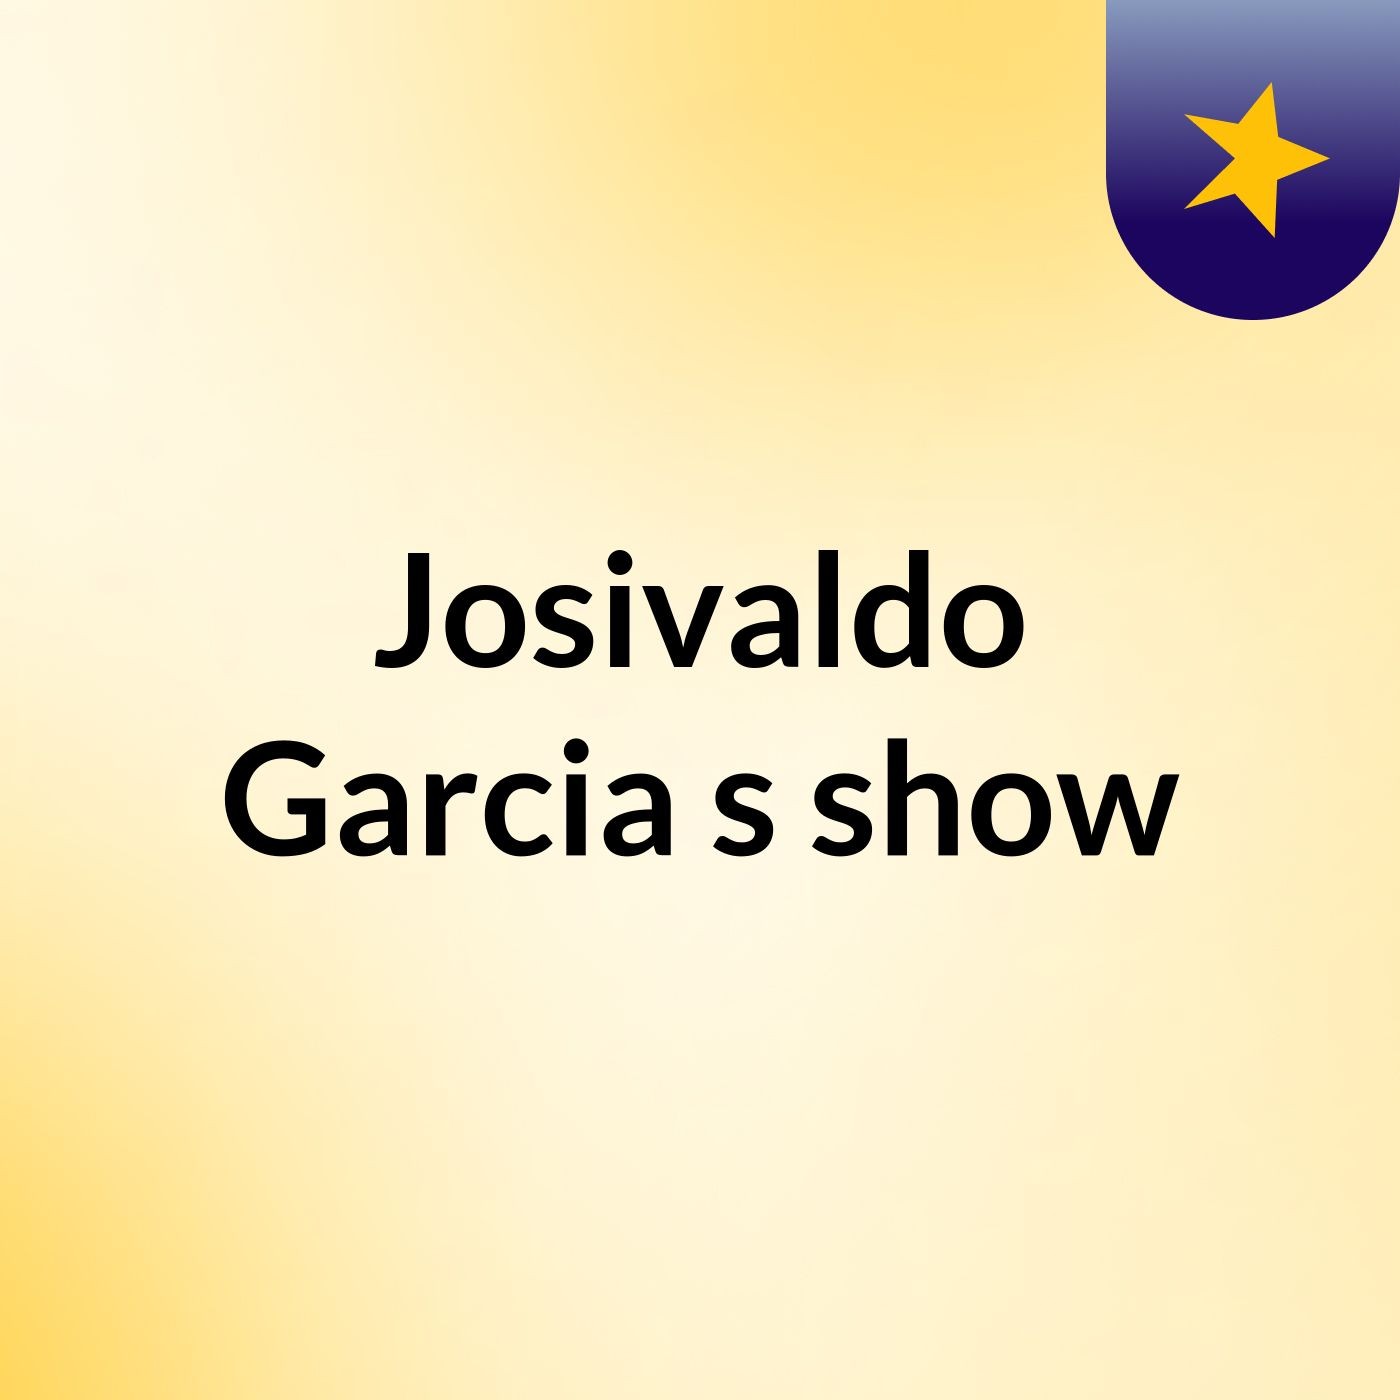 Josivaldo Garcia's show